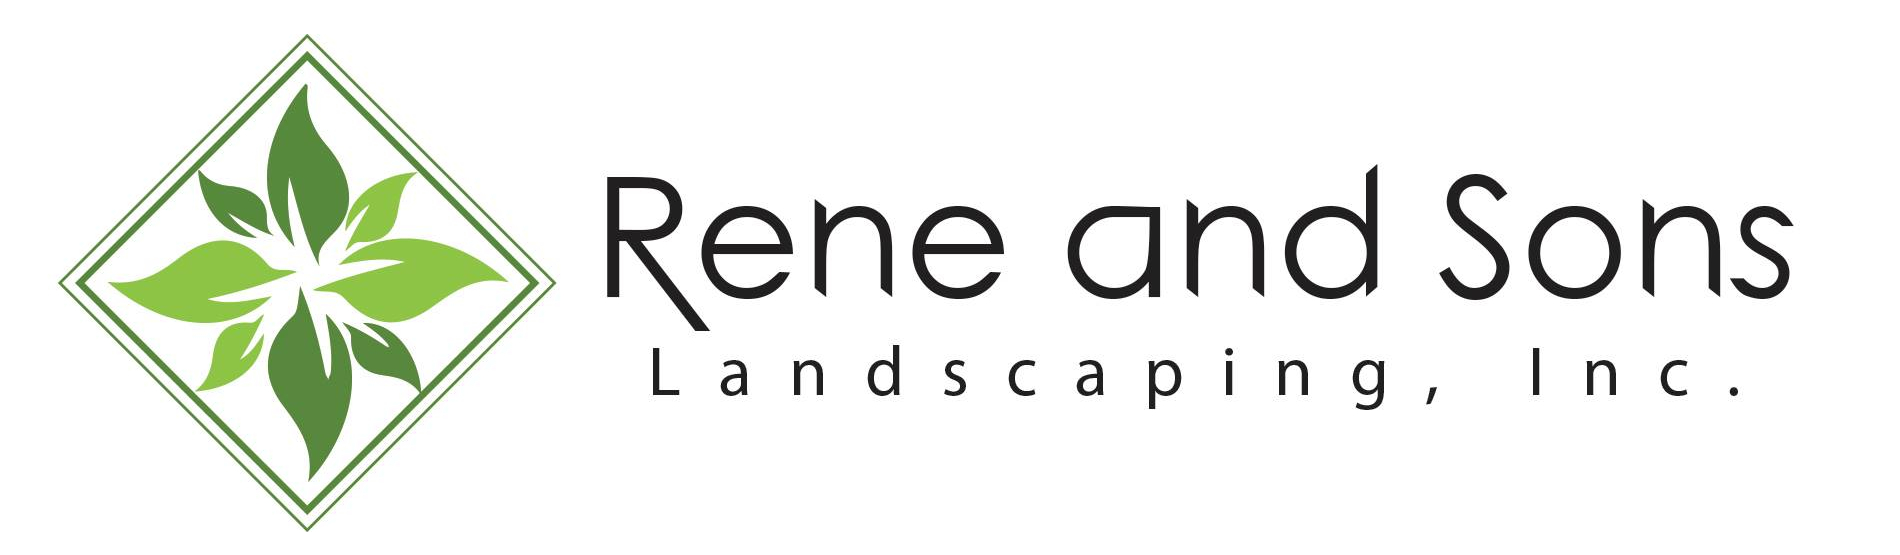 Rene Landscaping Contractors